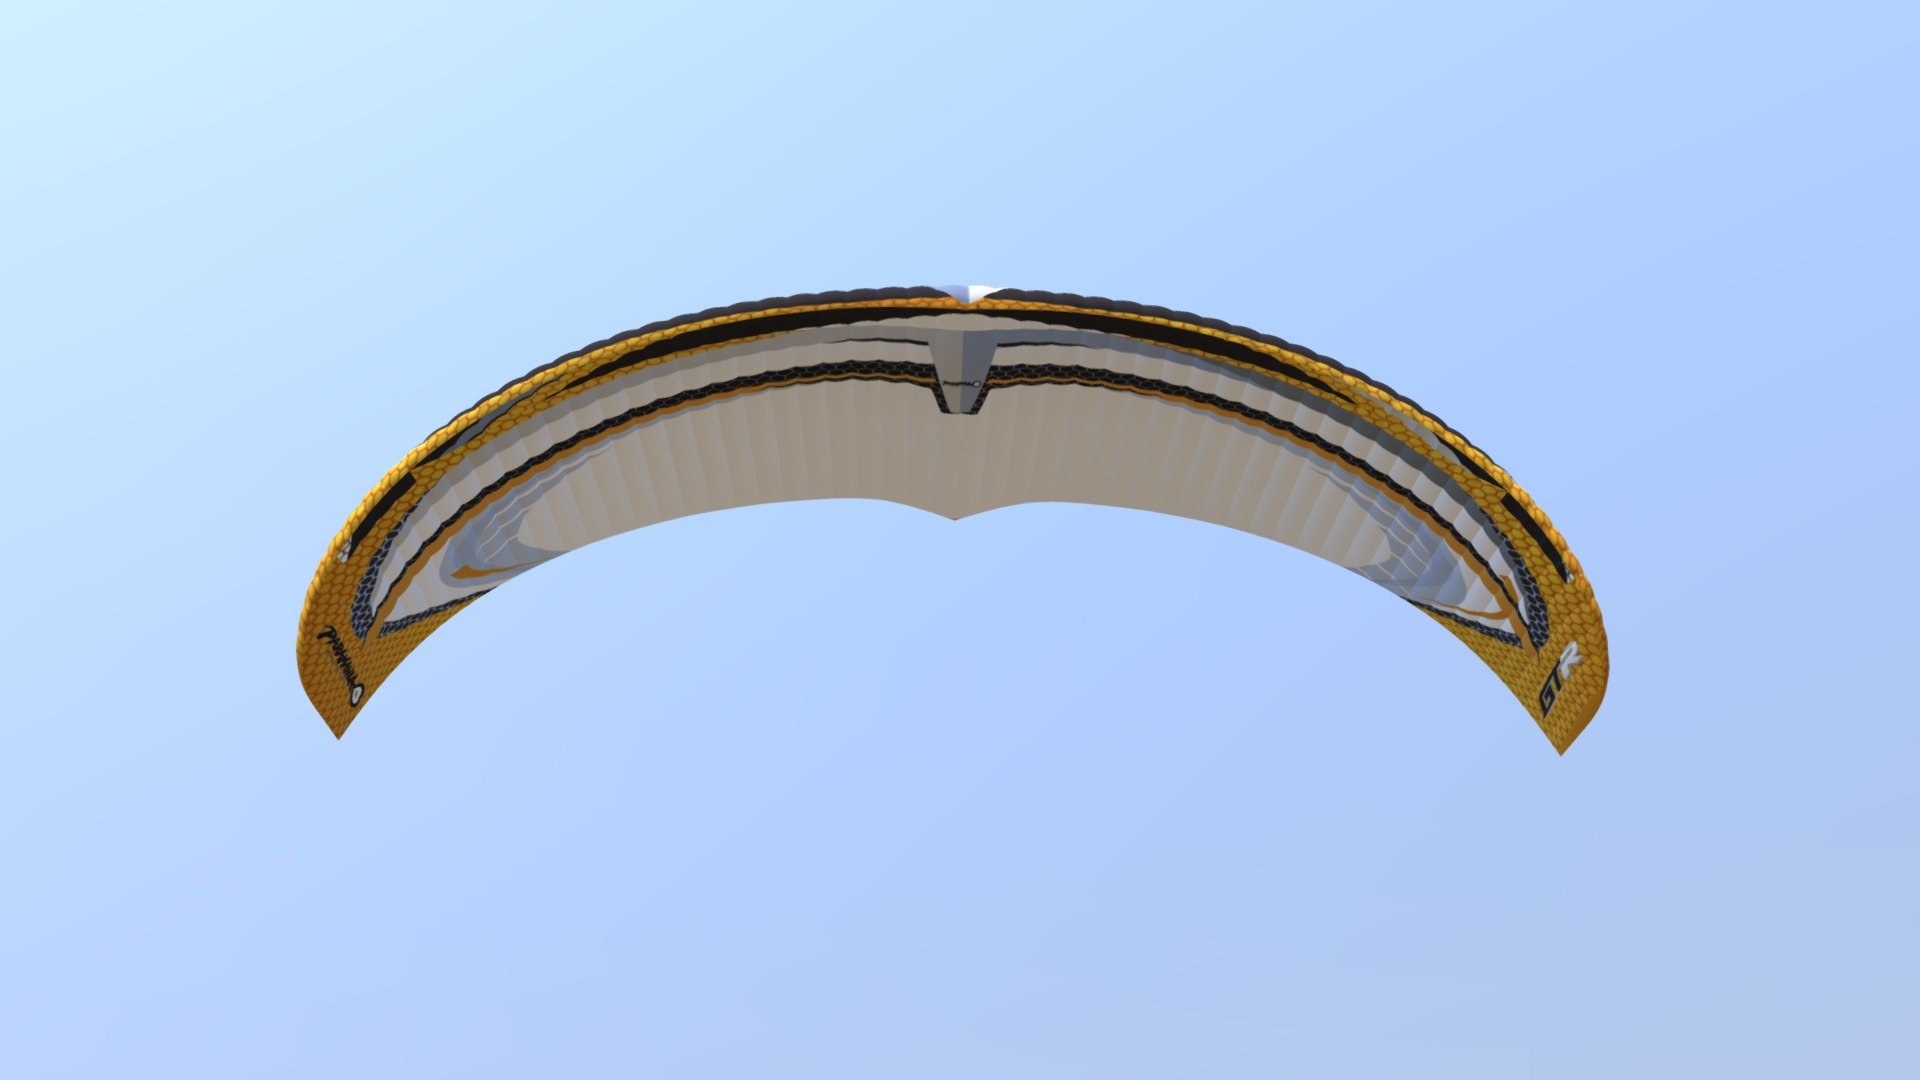 Paraglider Artwork3 - 3D model by remicj 3d model